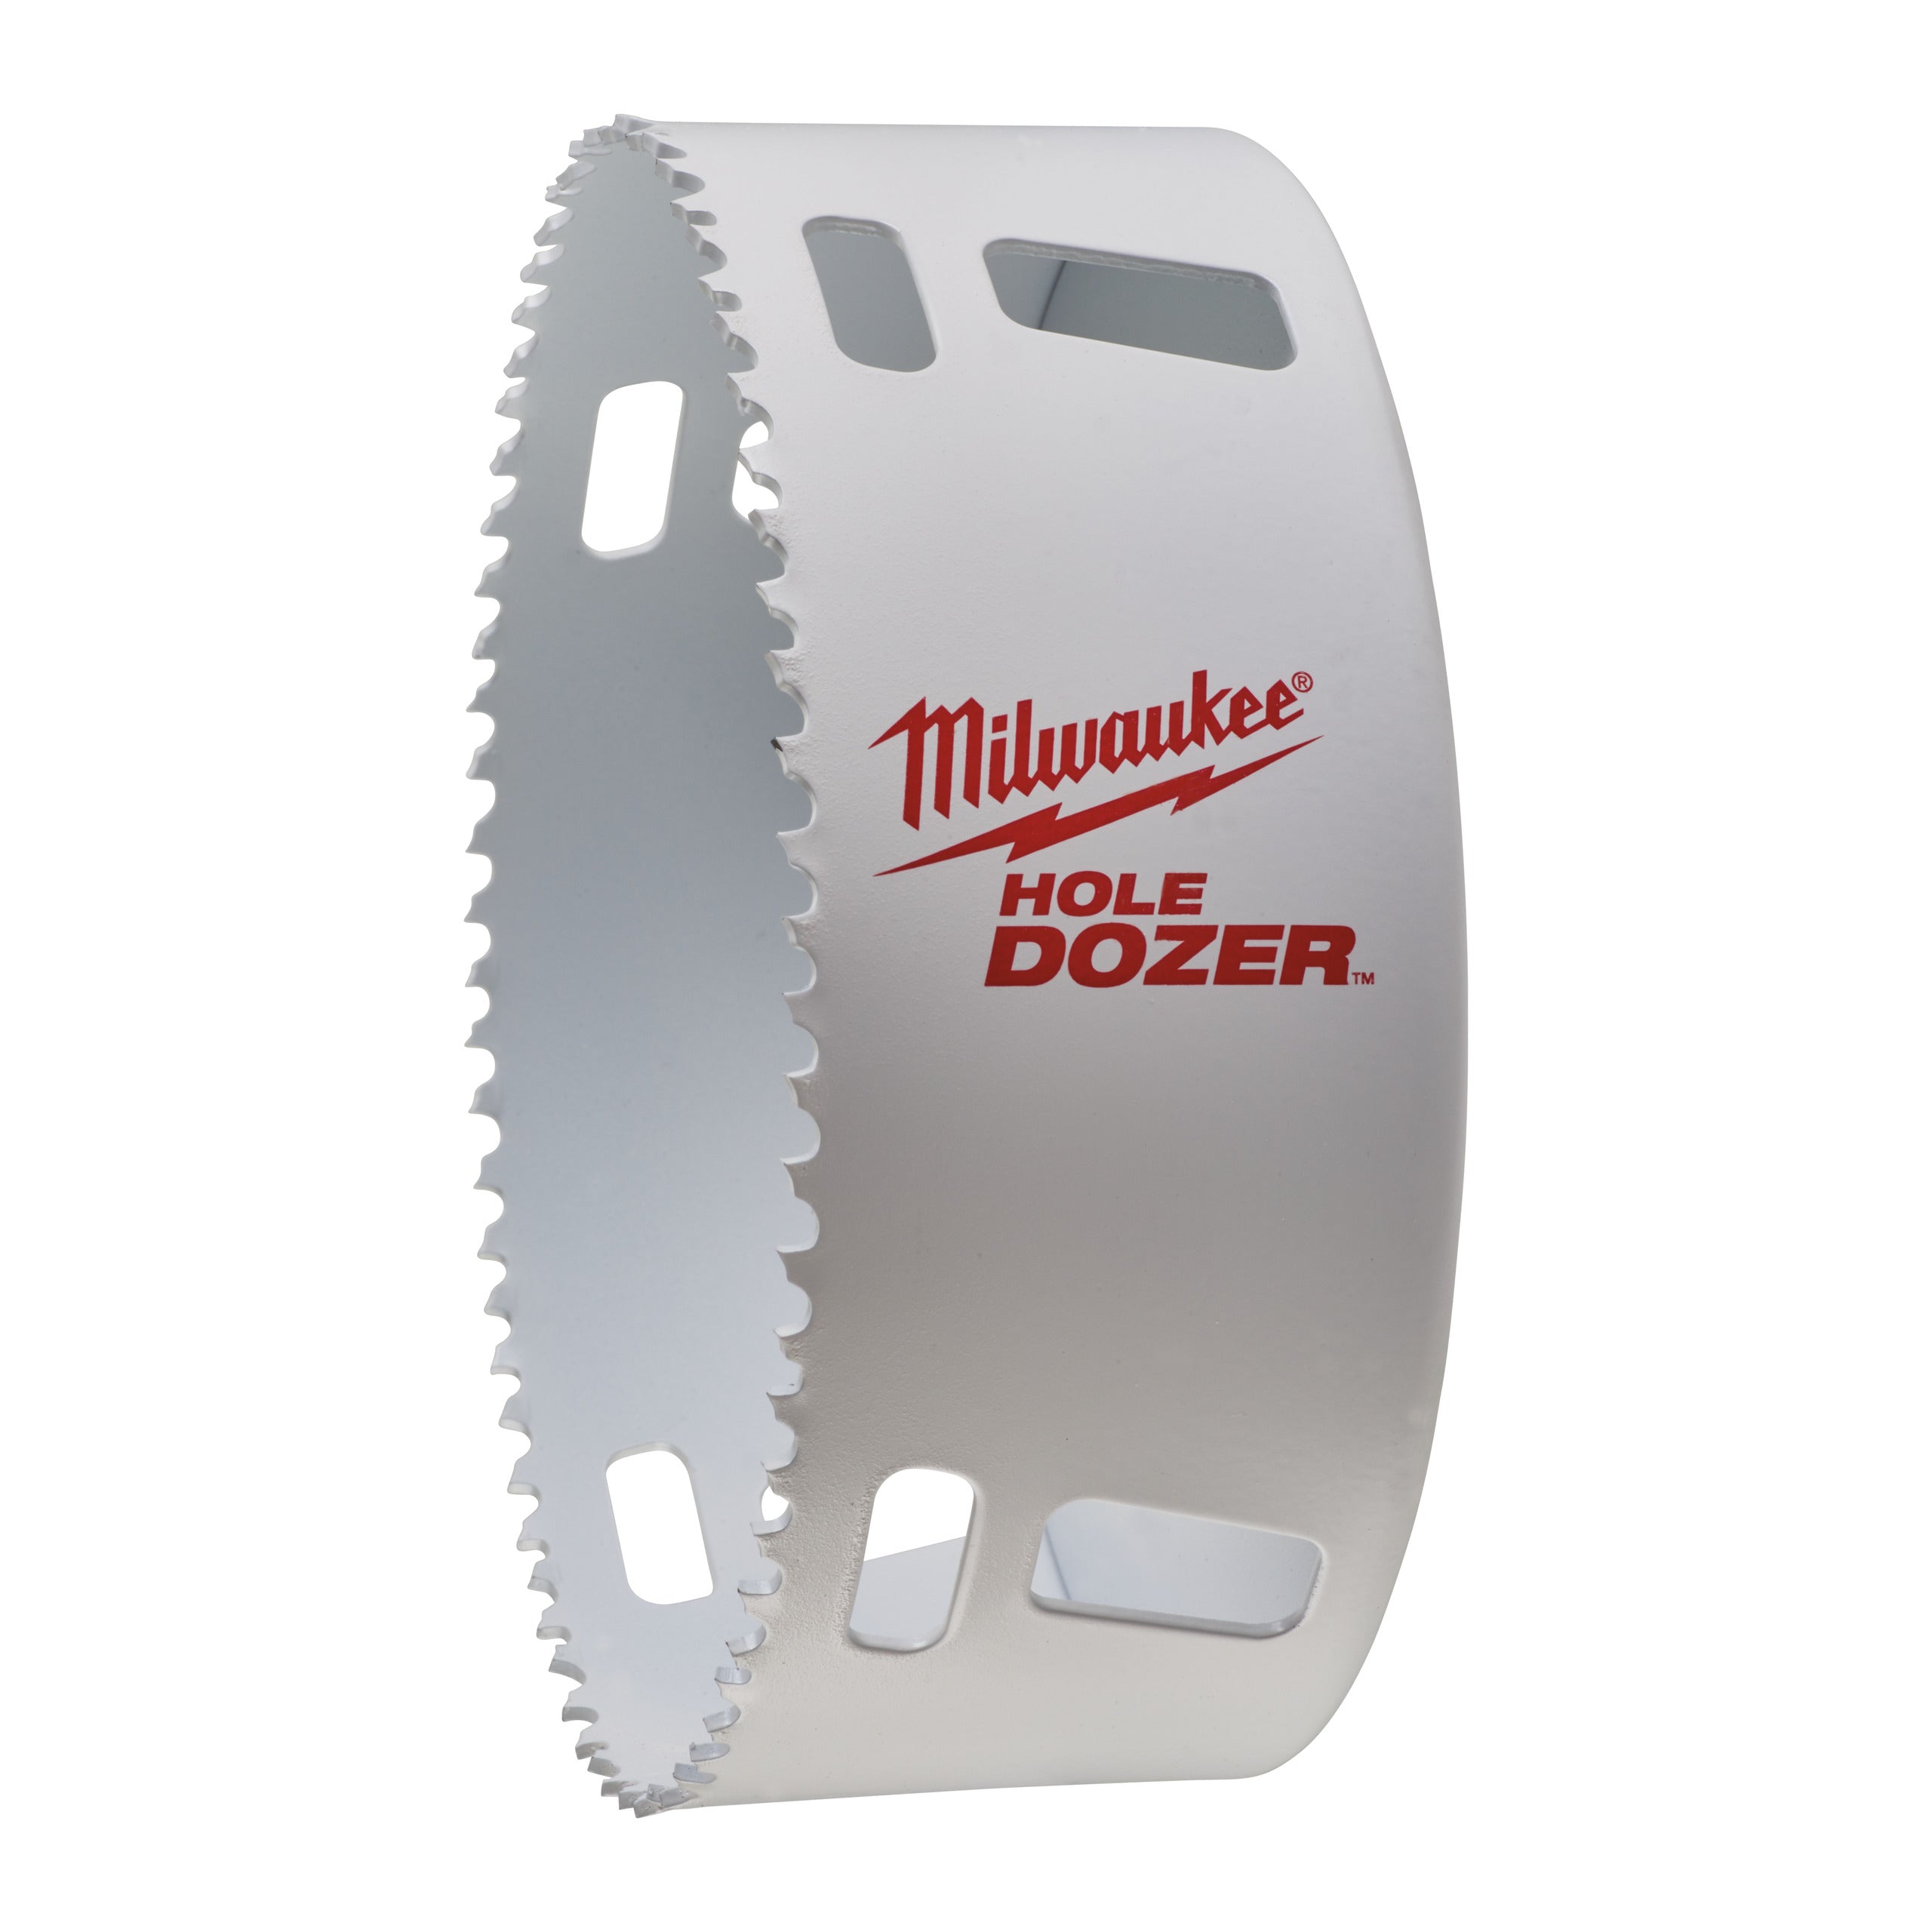 Carotă Milwaukee HOLE DOZER™ bi-metal Ø127 mm 49560243